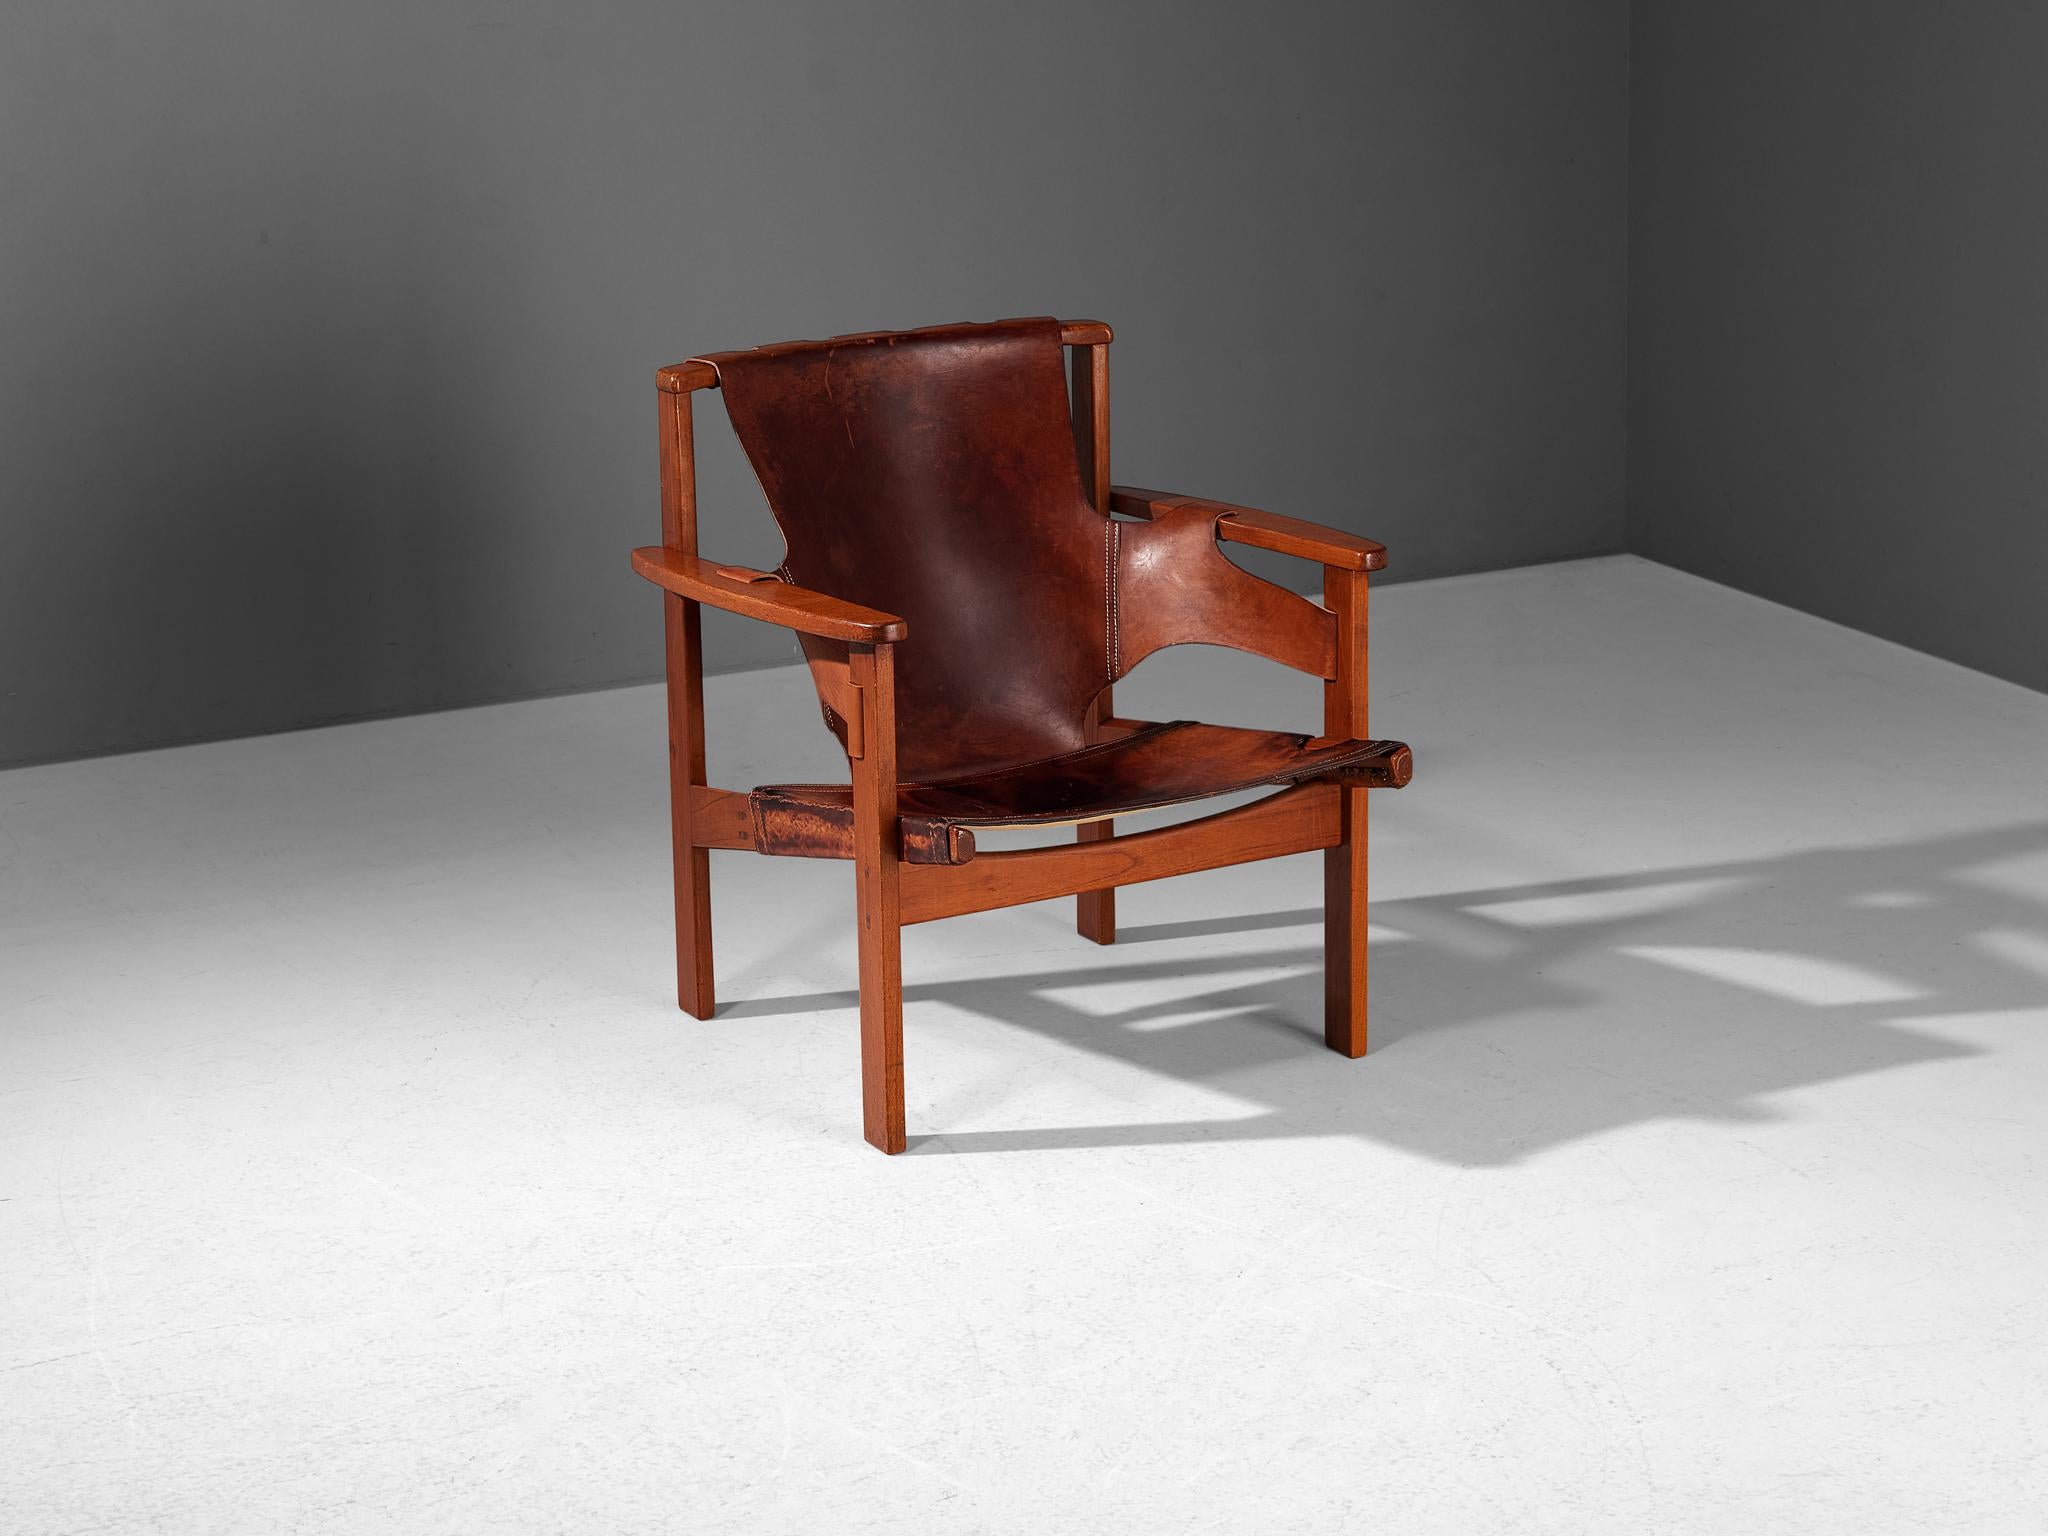 Carl-Axel Acking pour Nordiska Kompaniet, chaise longue modèle 'Trienna', chêne, cuir, Suède, conçue en 1957

Cette chaise longue caractéristique a été conçue par l'architecte et designer de meubles suédois Carl-Axel Acking en 1957. Le nom de la